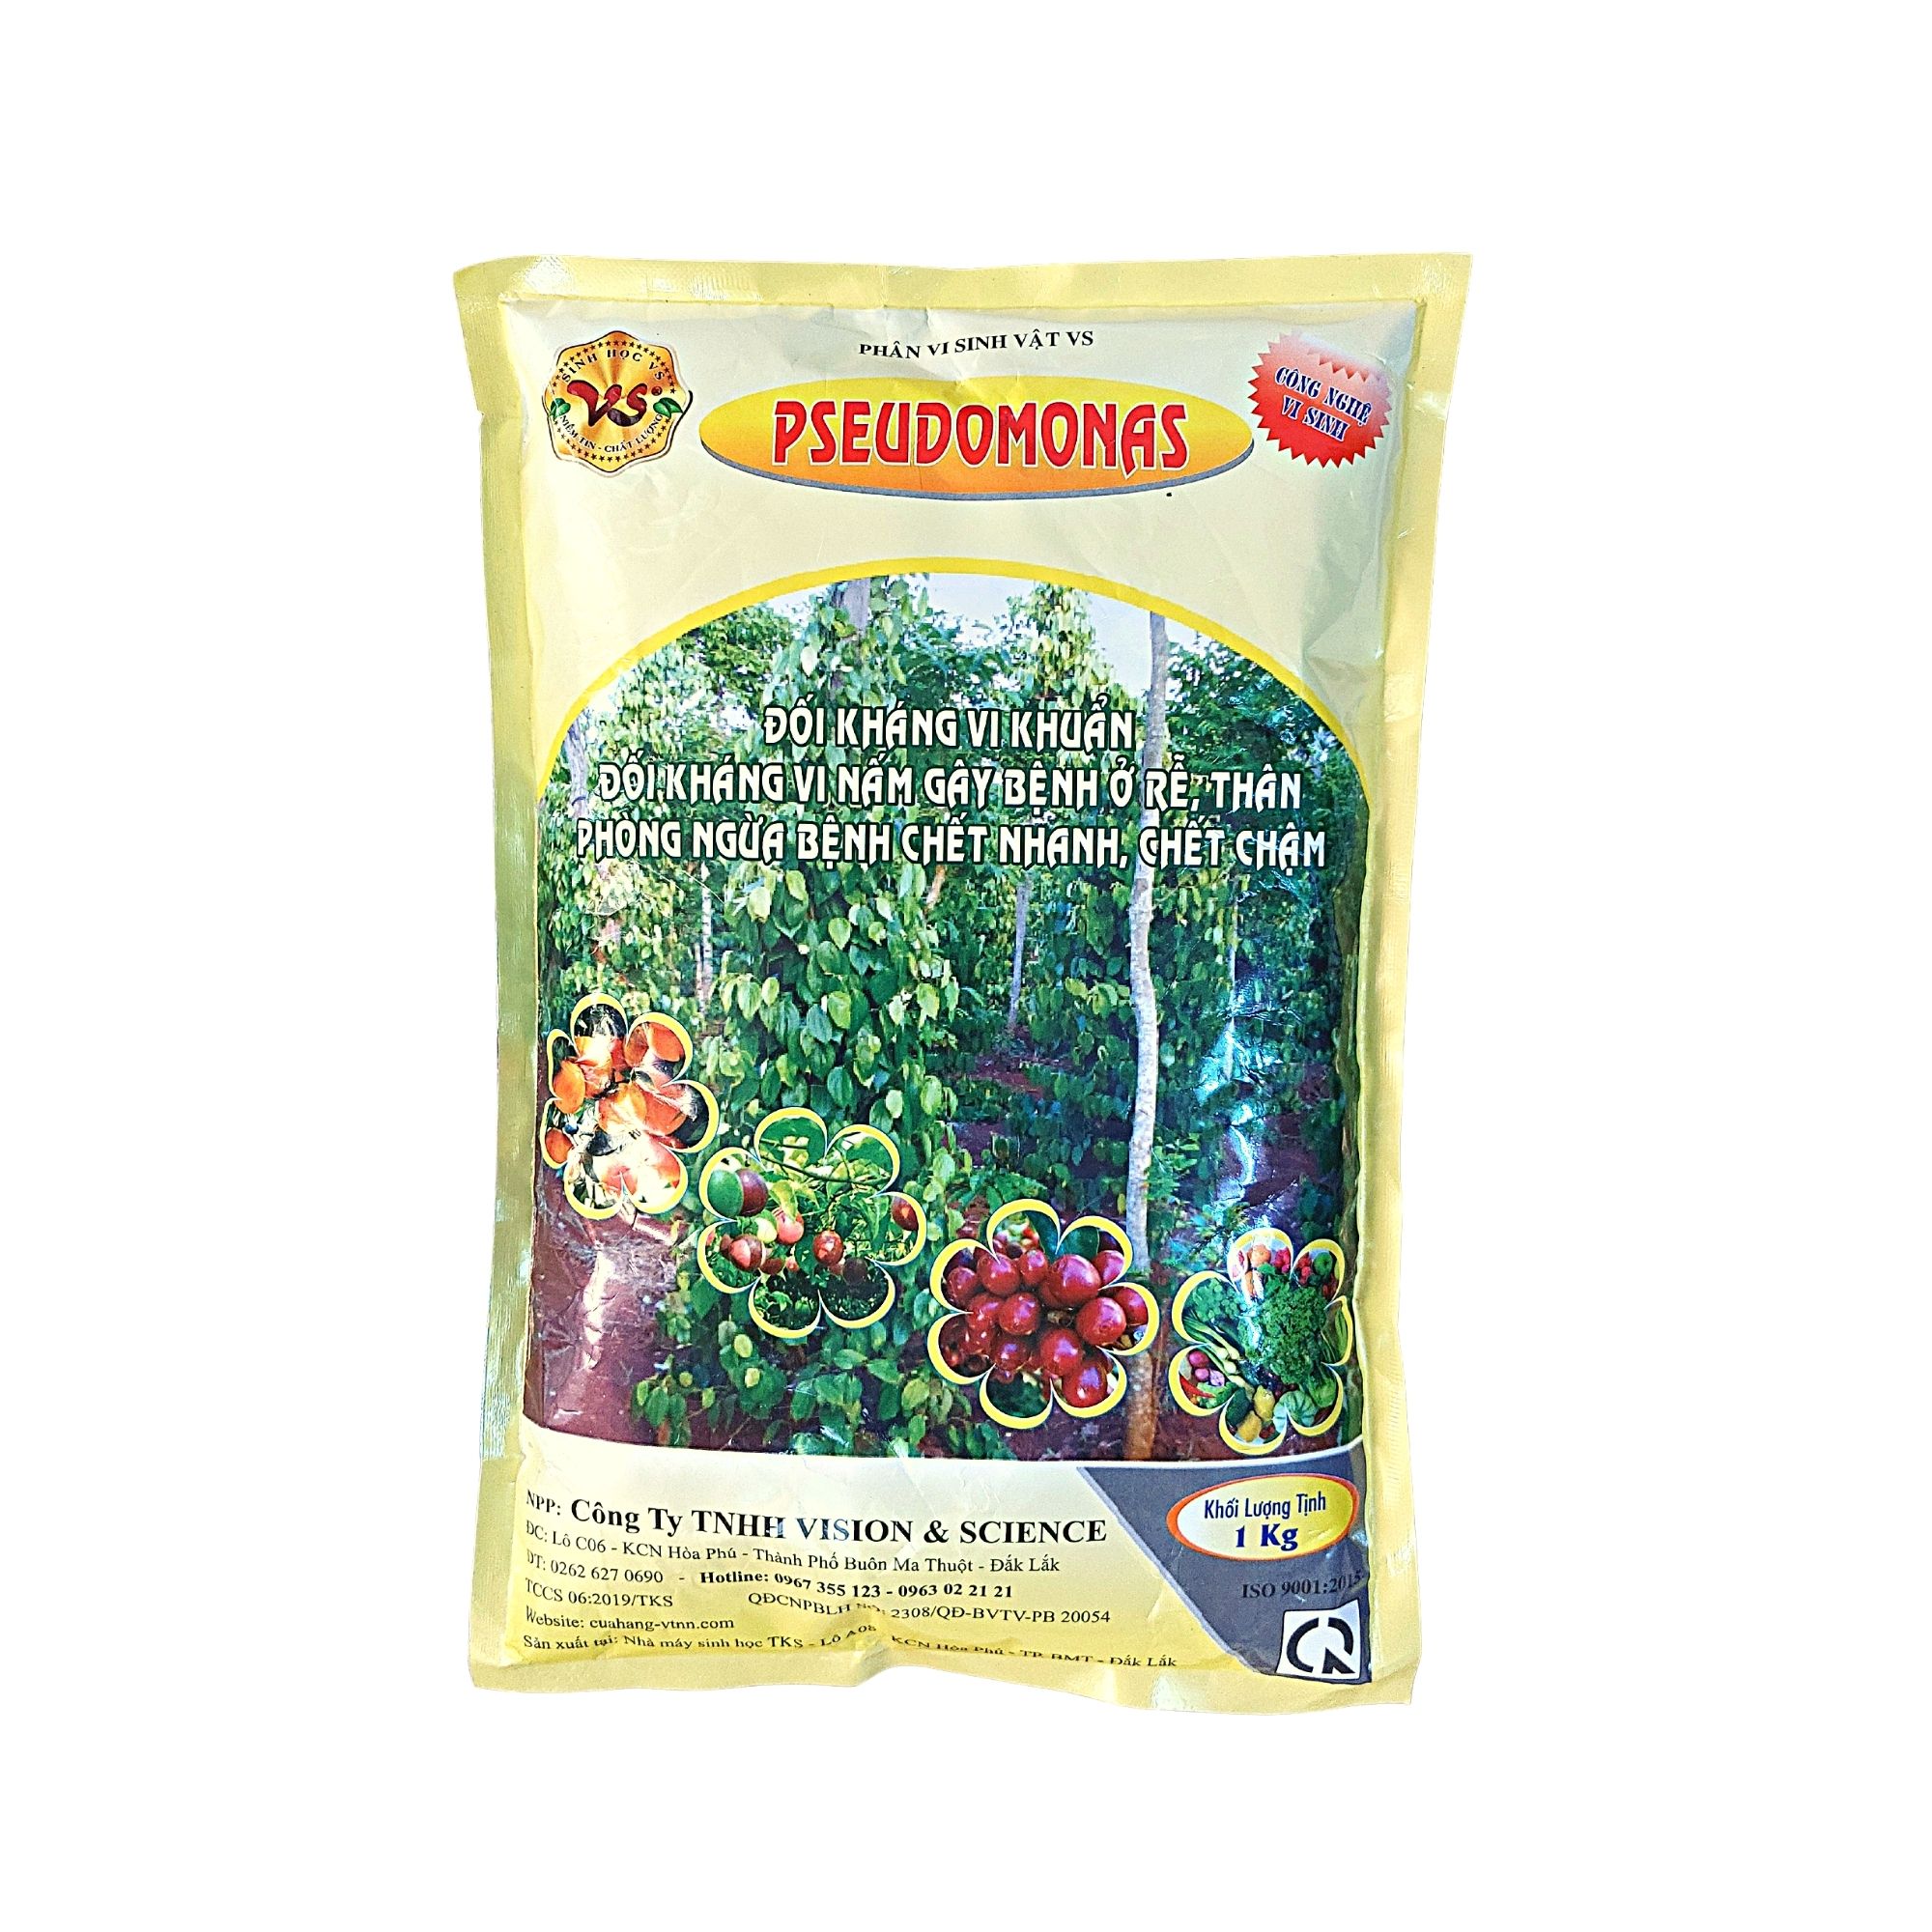 Phân vi sinh vật PSEUDOMONAS - Phòng trừ bệnh héo xanh, thối rễ - Gói 1kg - Cây Xanh Store